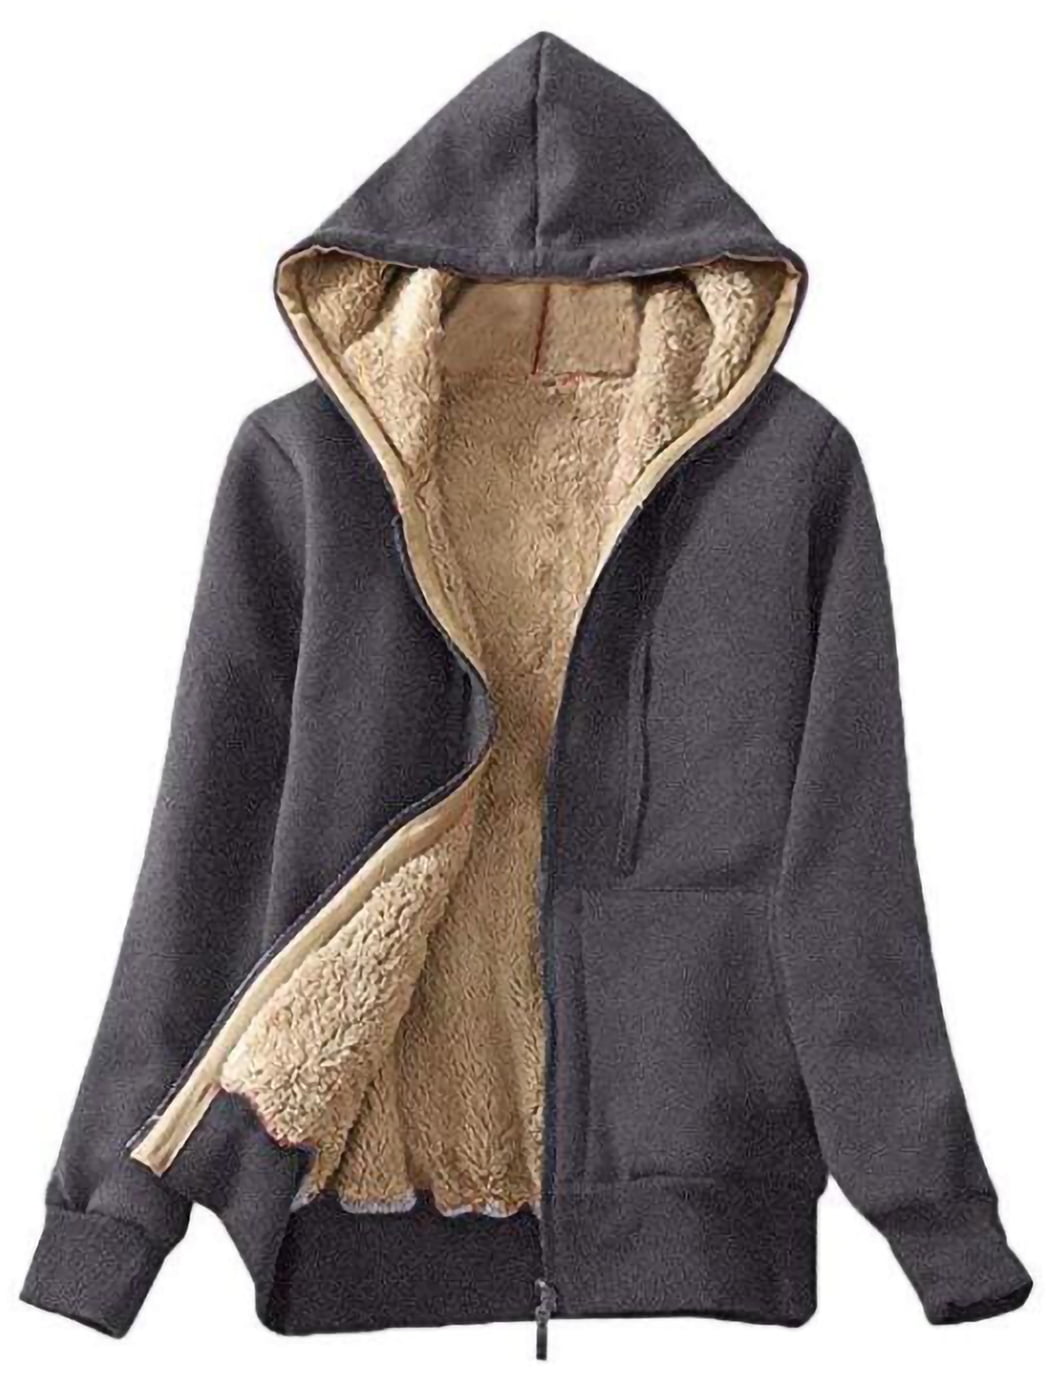 Meilidress Girls Boys Sherpa Fleece Hoodies Vest Jacket Zipper Warm Sleeveless Fall Winter Outwear 